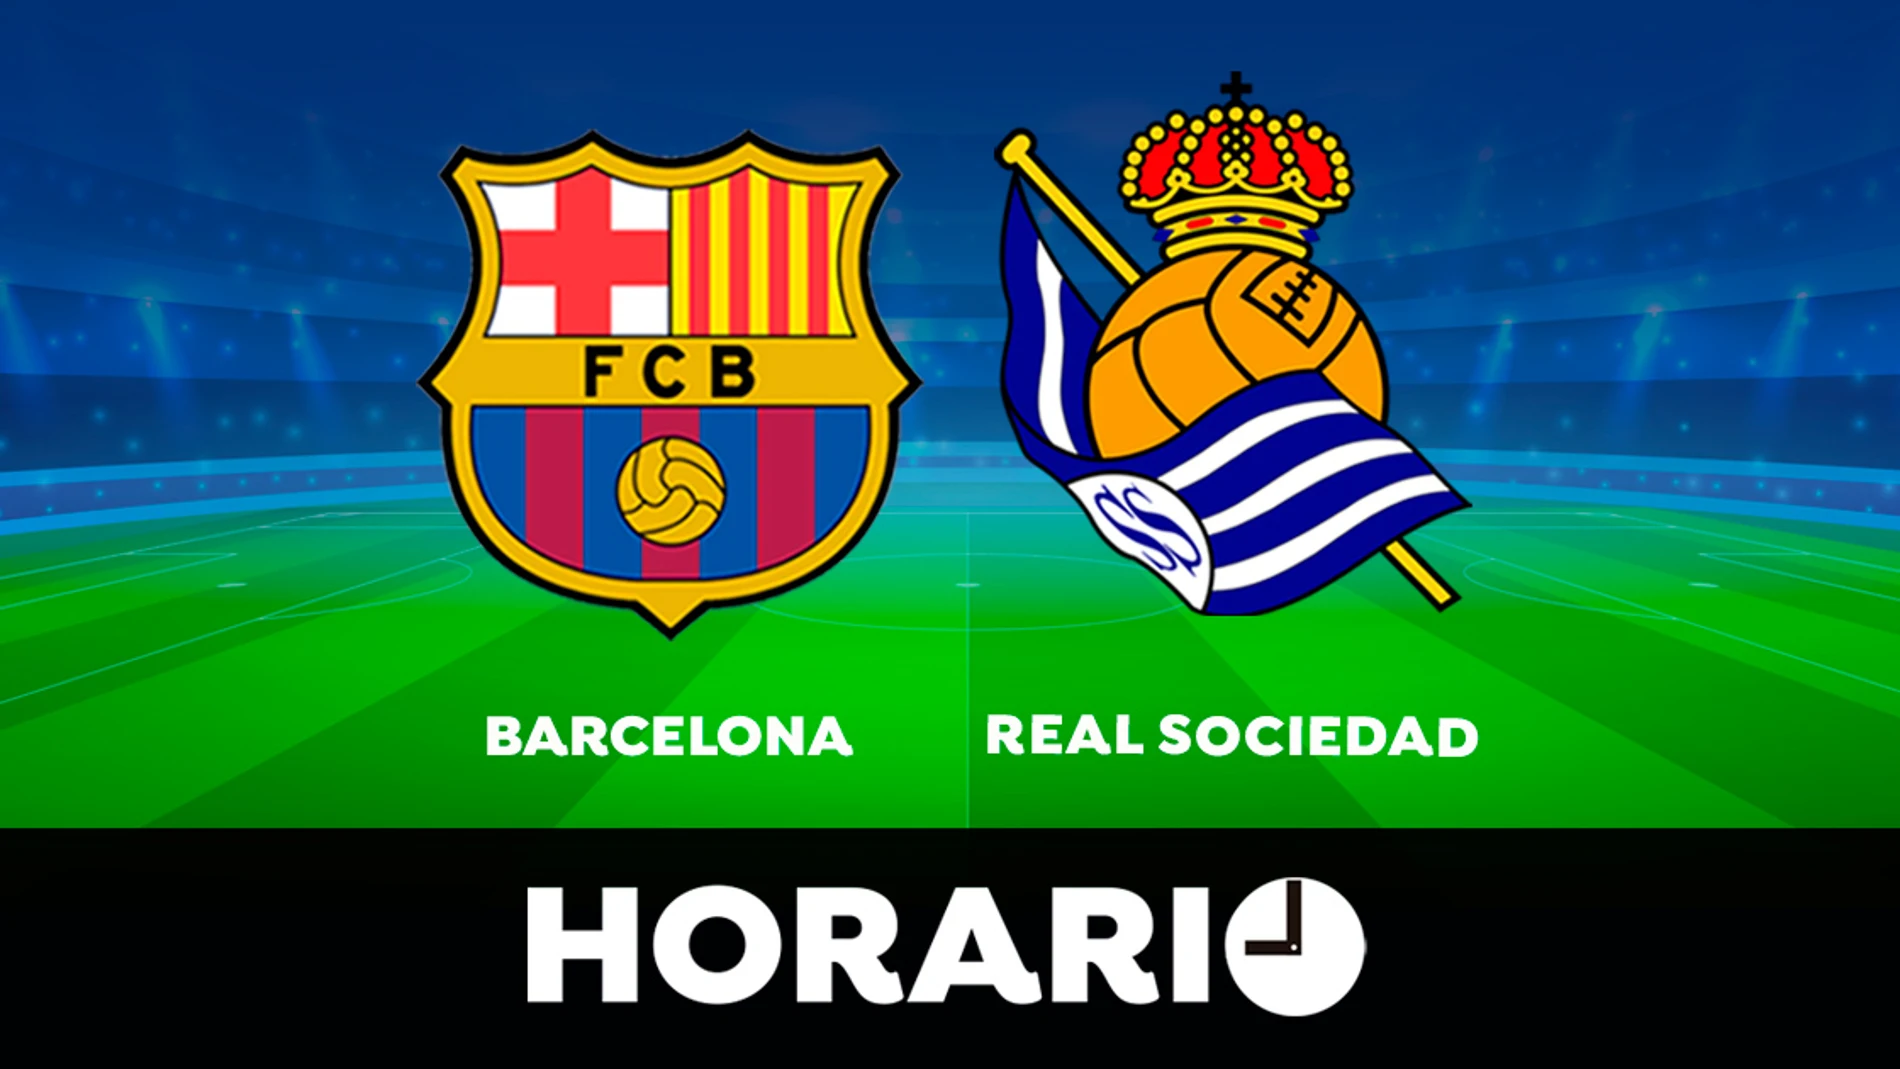 Barcelona - Real Sociedad: Horario y ver el partido de LaLiga en directo